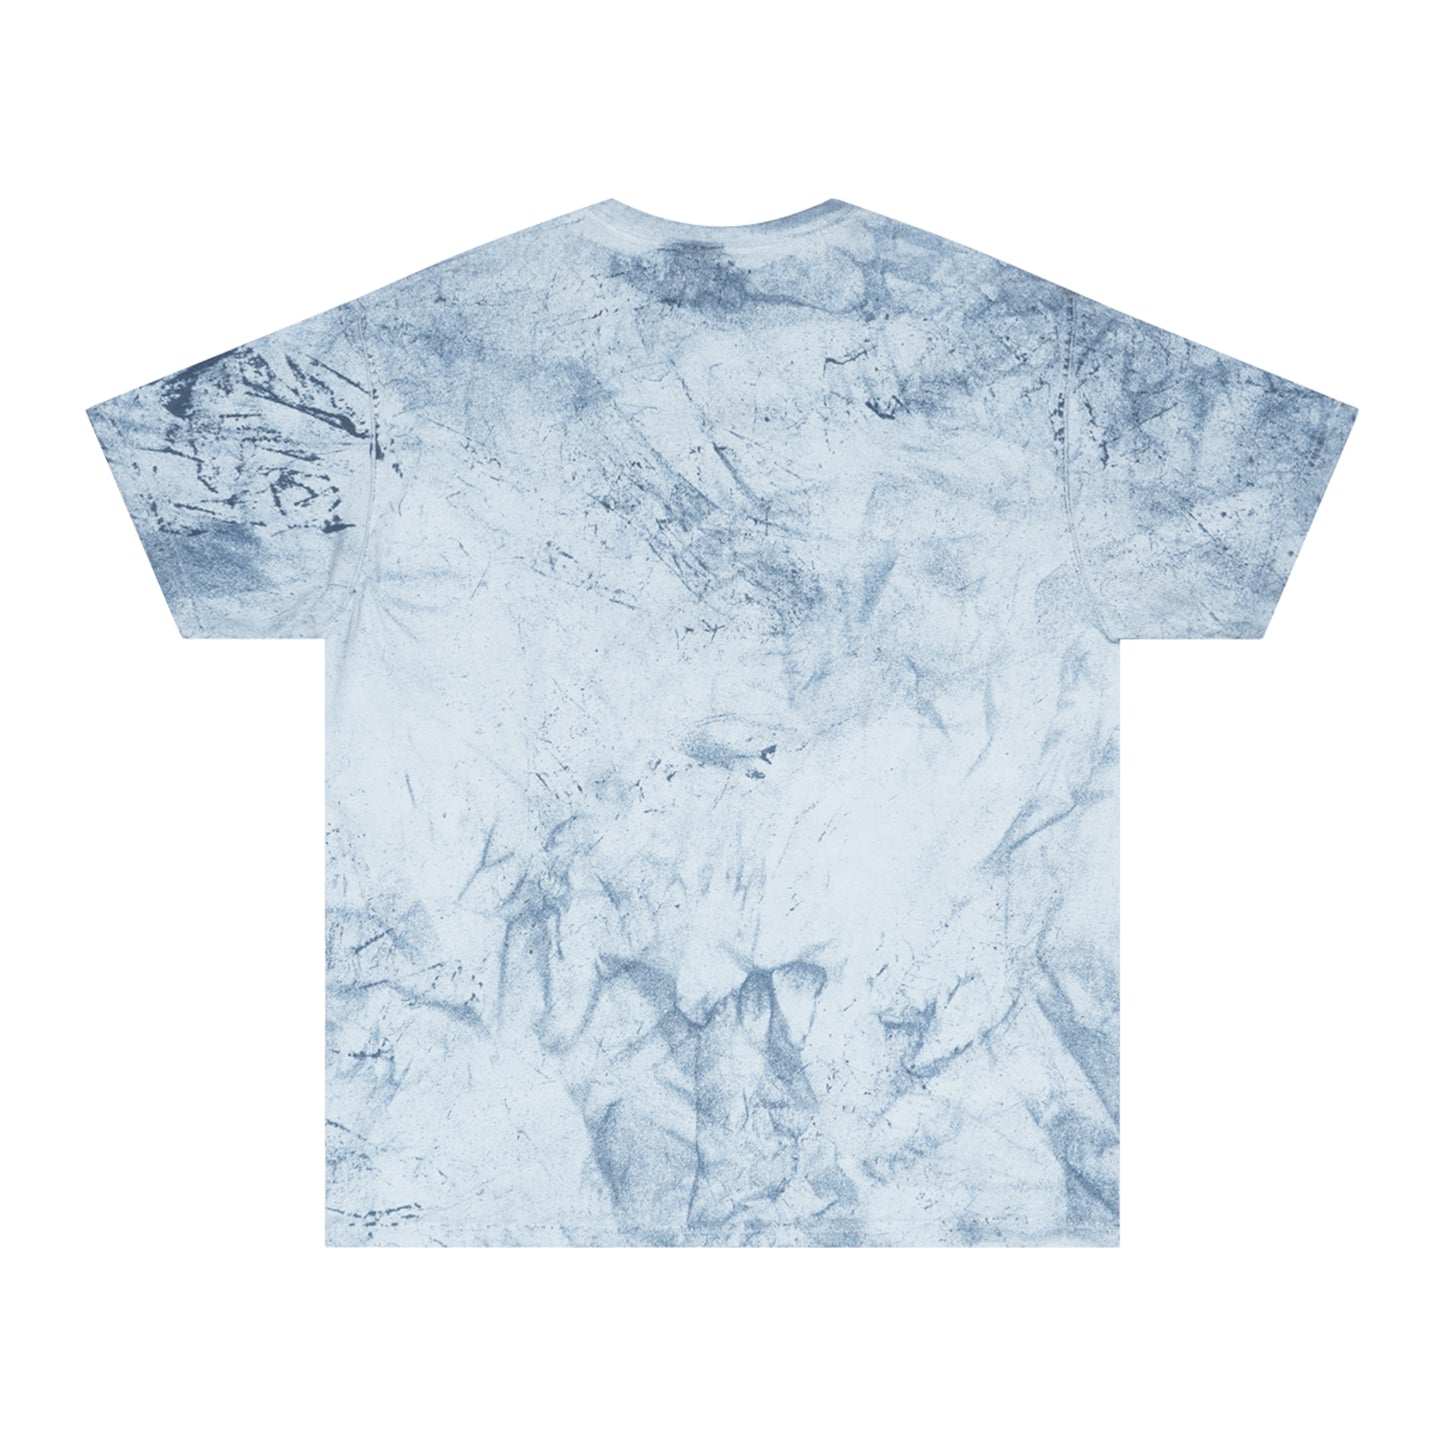 Pixel Goose - Unisex Color Blast T-Shirt